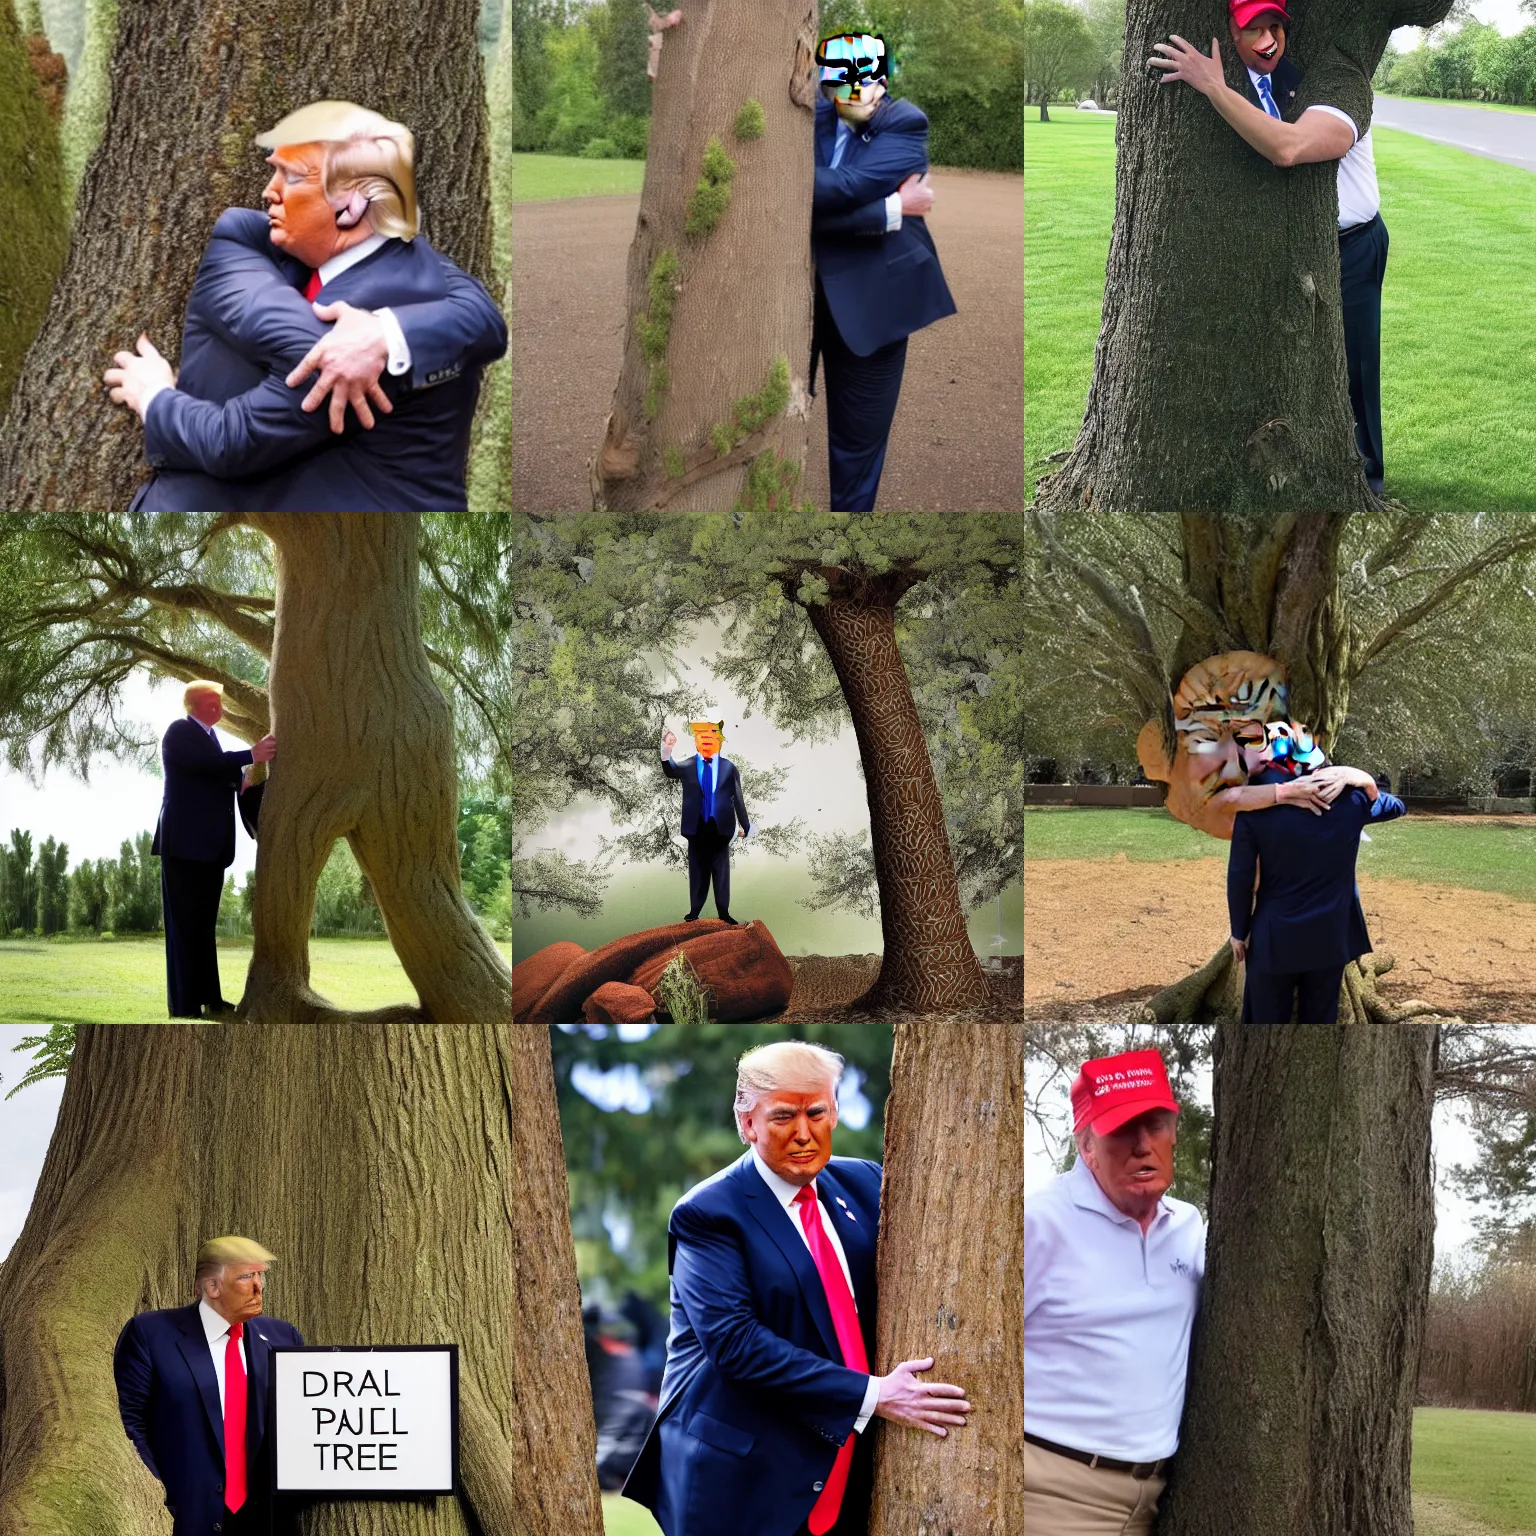 Prompt: Donald Trump hugging a tree